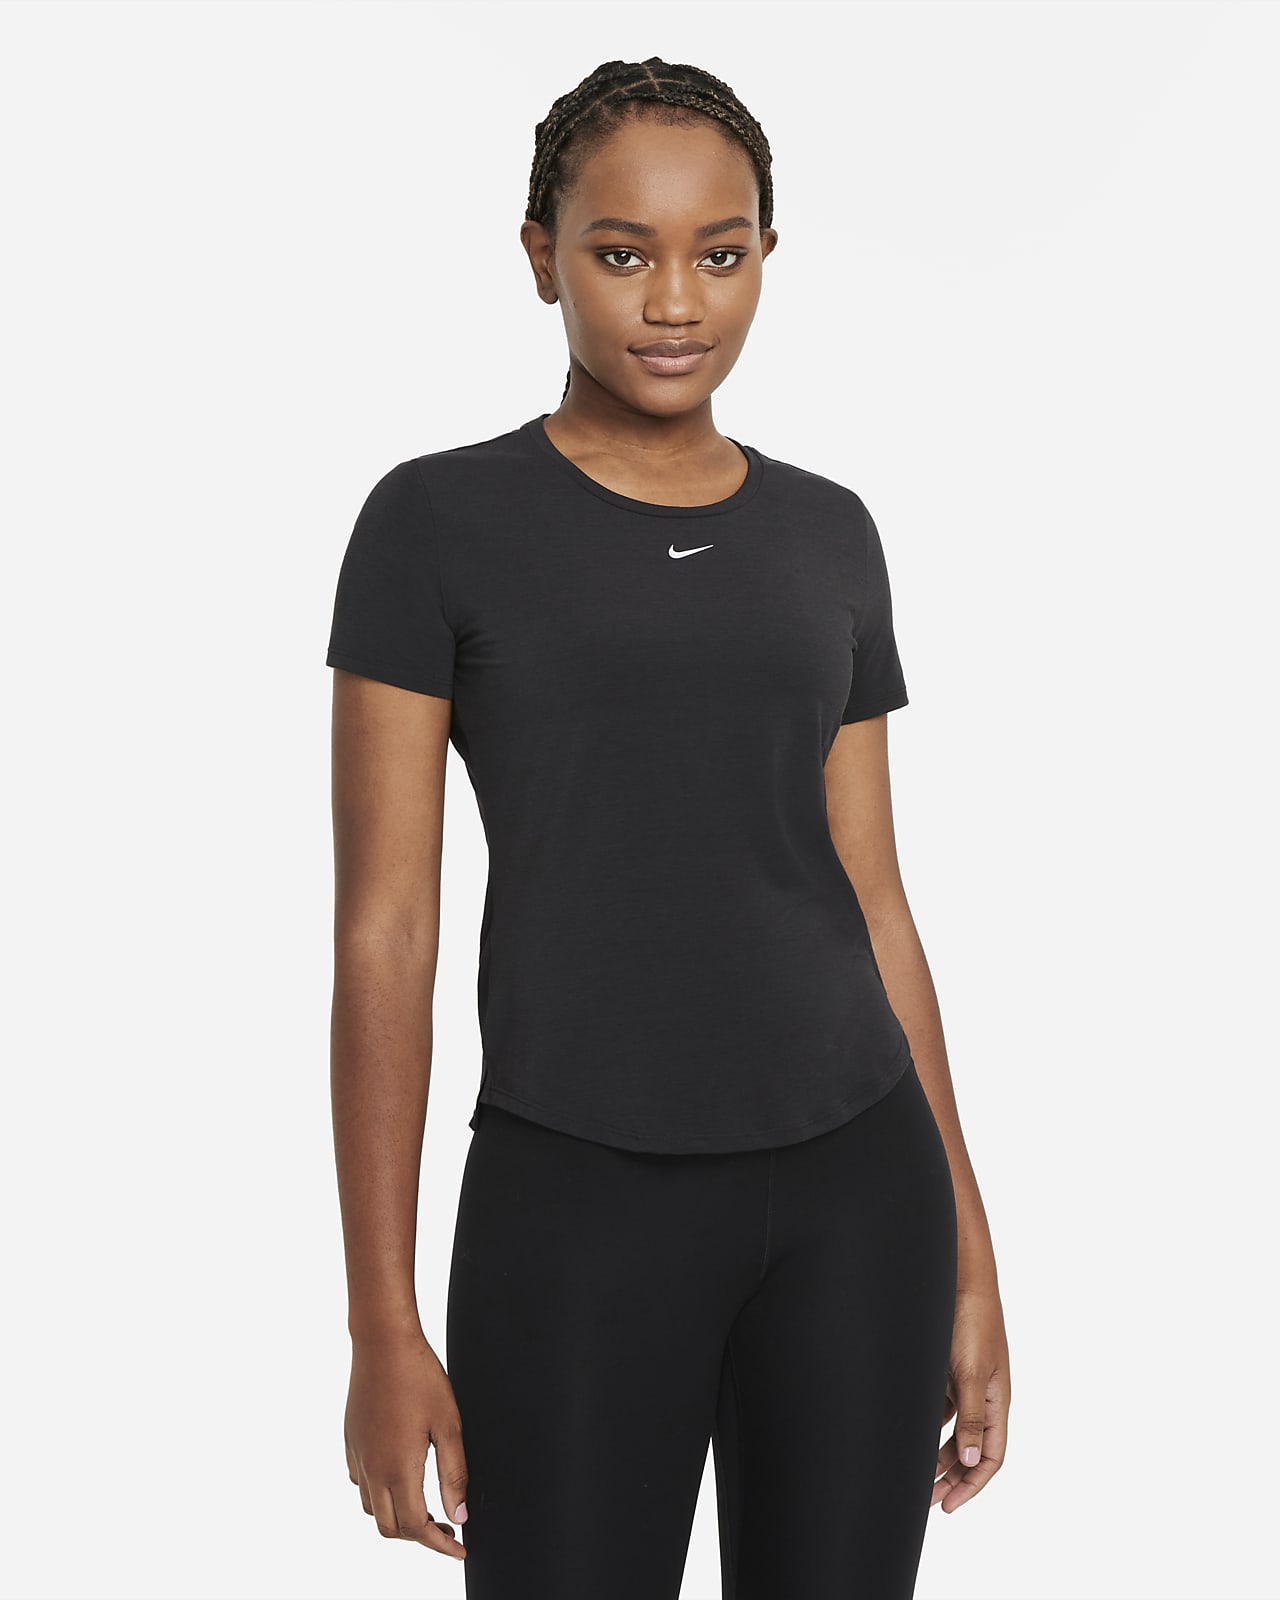 Γυναικεία κοντομάνικη μπλούζα με κανονική εφαρμογή Nike Dri-FIT UV One Luxe